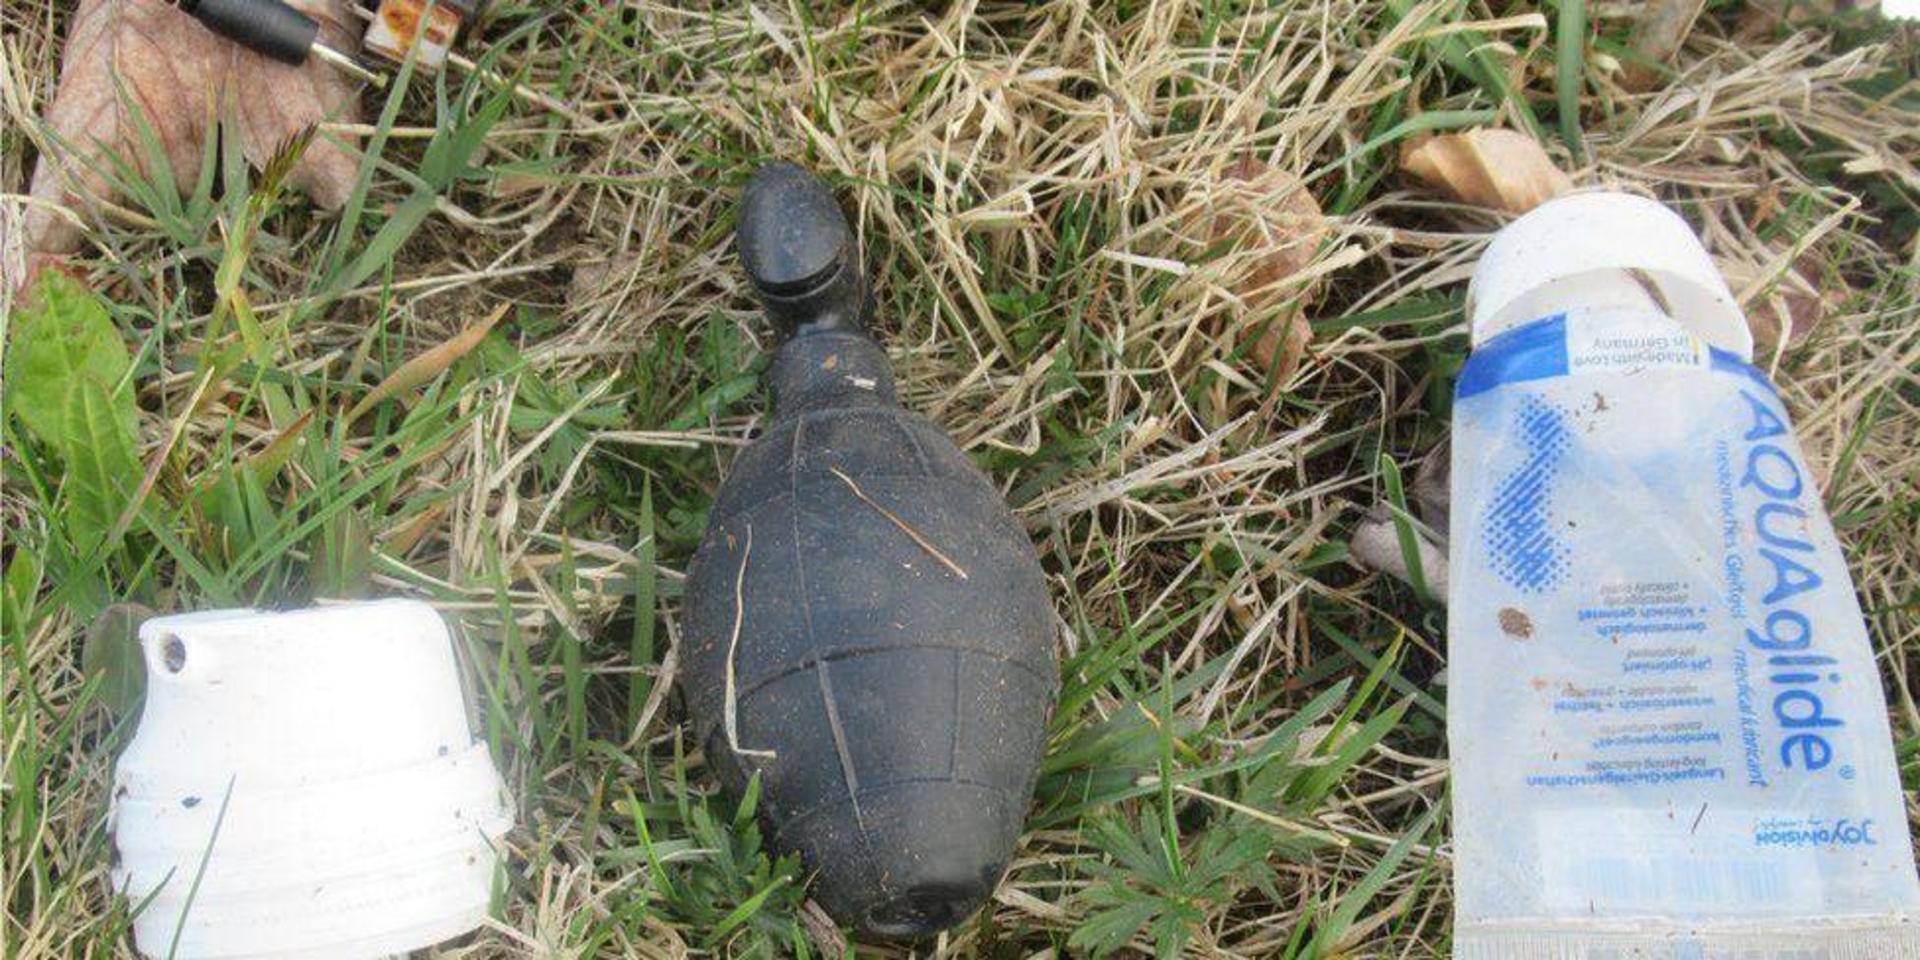 Det granatliknande föremålet påträffades av en kvinnlig joggare i en skogsparti utanför den tyska staden Passau.